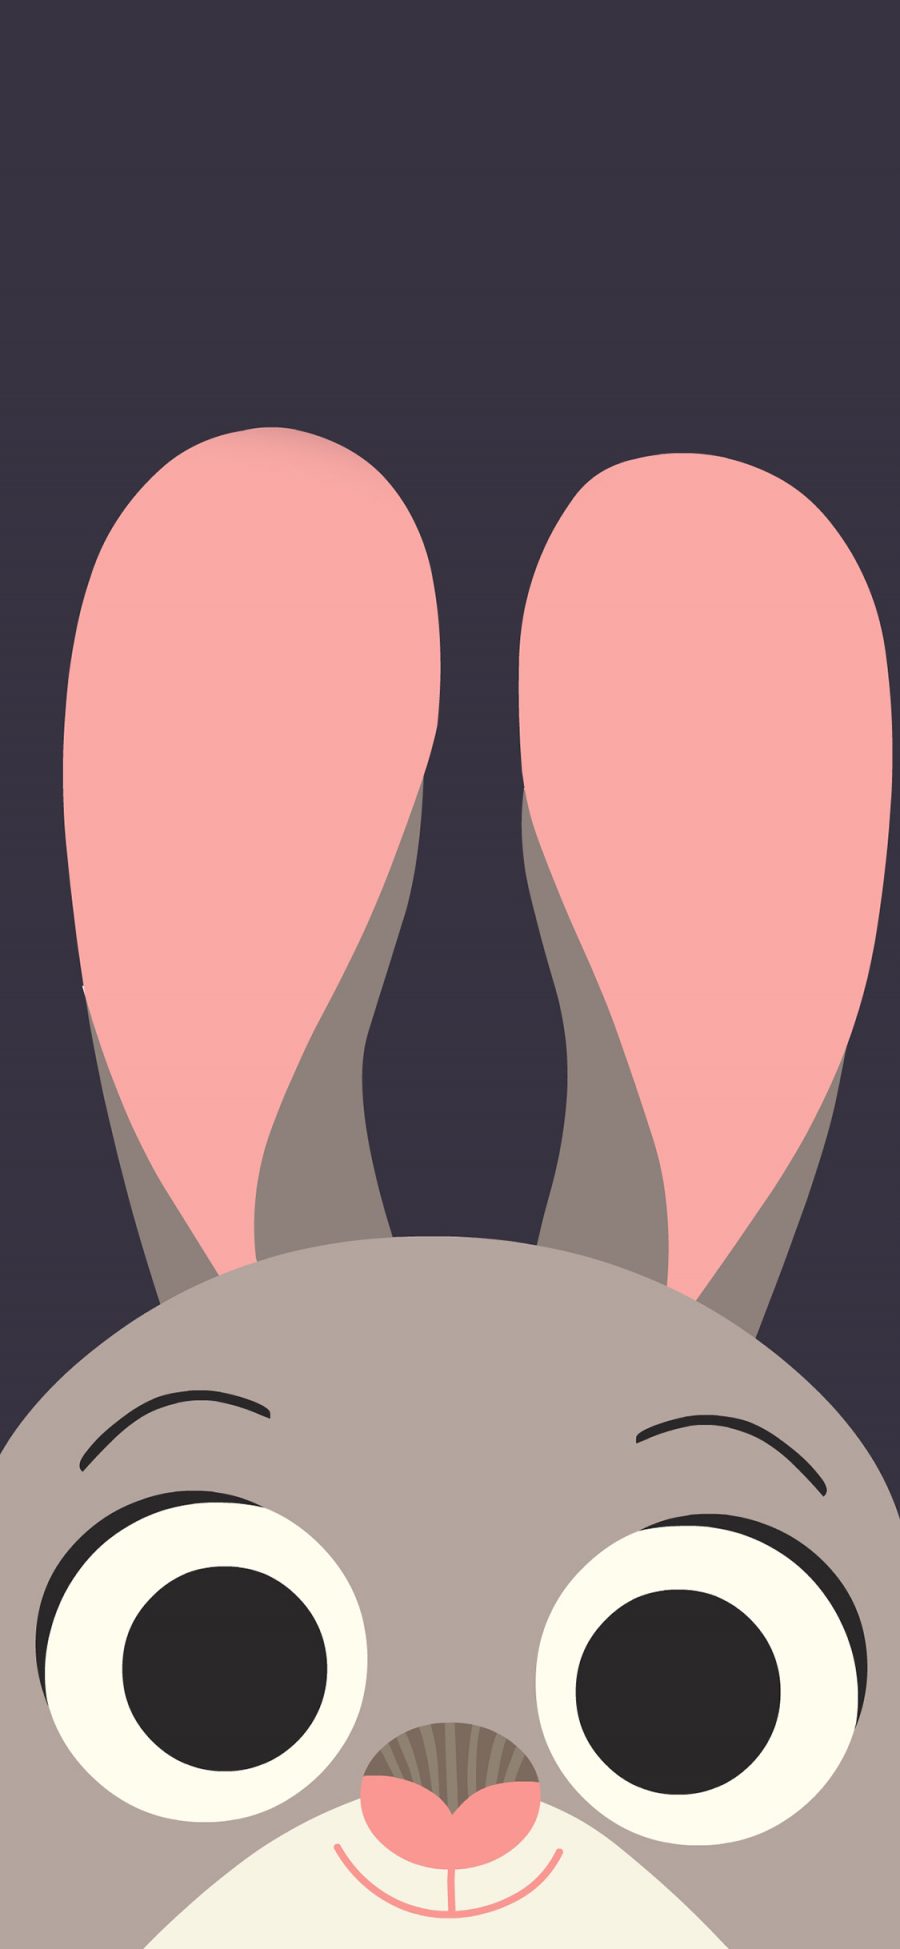 [2436×1125]疯狂动物城 朱迪·霍普斯 棉尾兔 动画 电影 苹果手机动漫壁纸图片